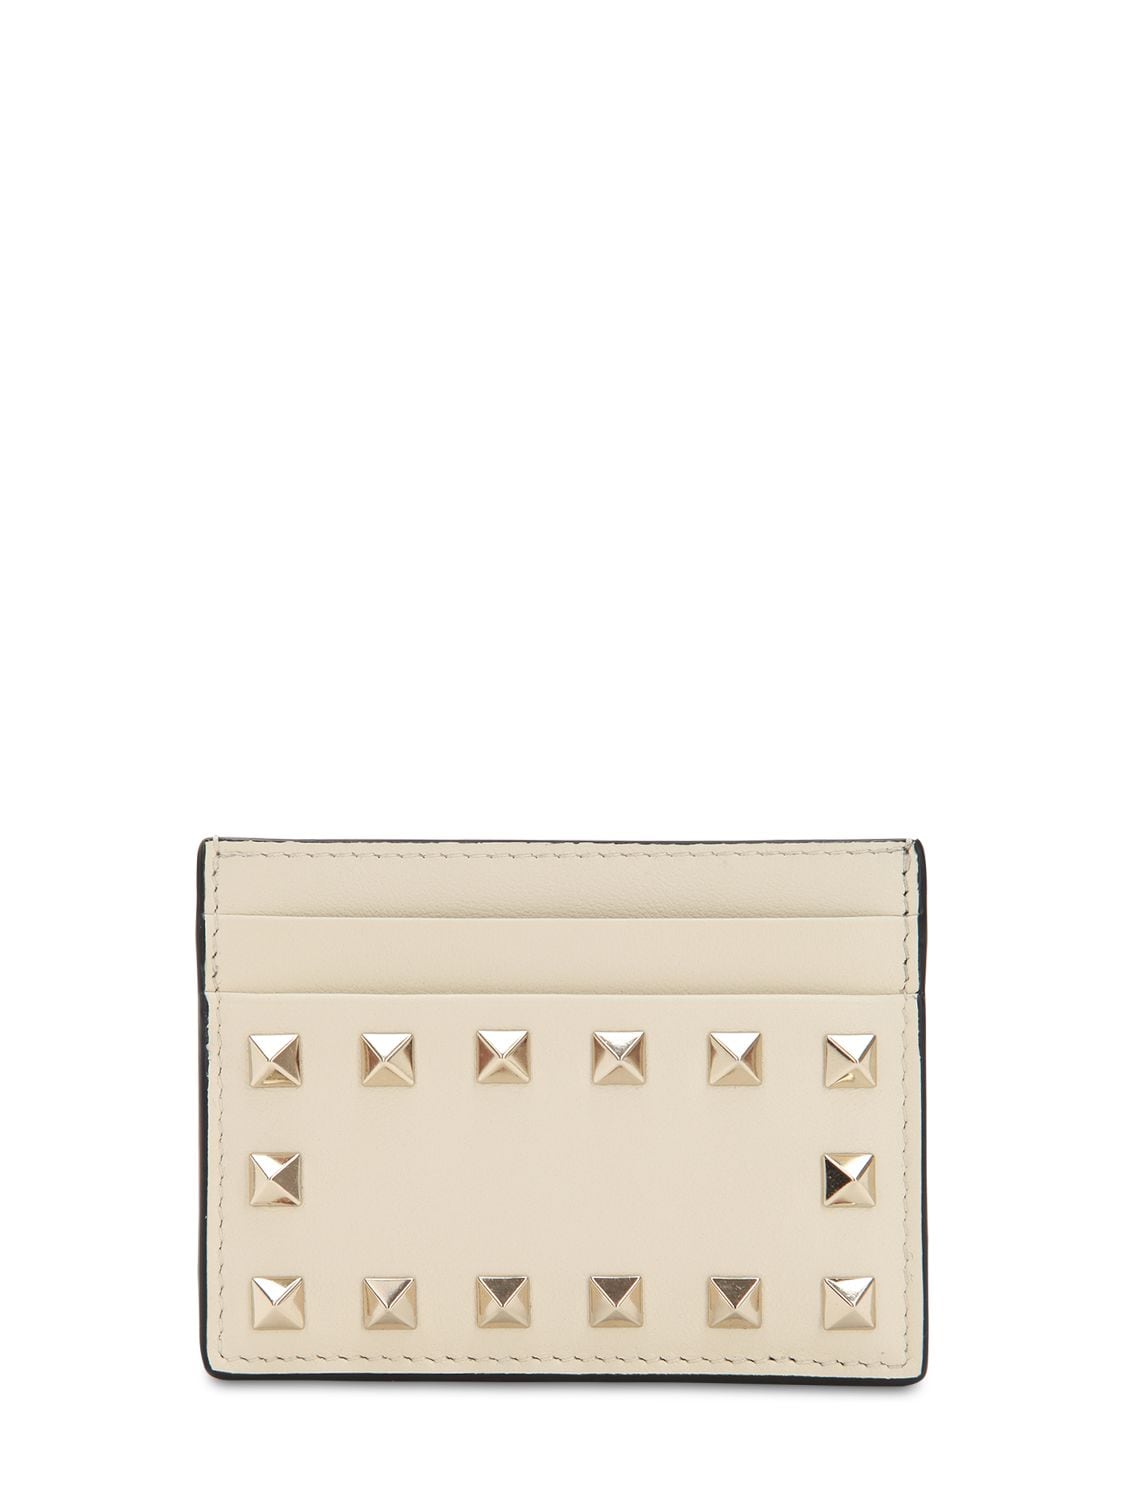 Valentino Garavani Rockstud Embellished Leather Card Holder In Ivory